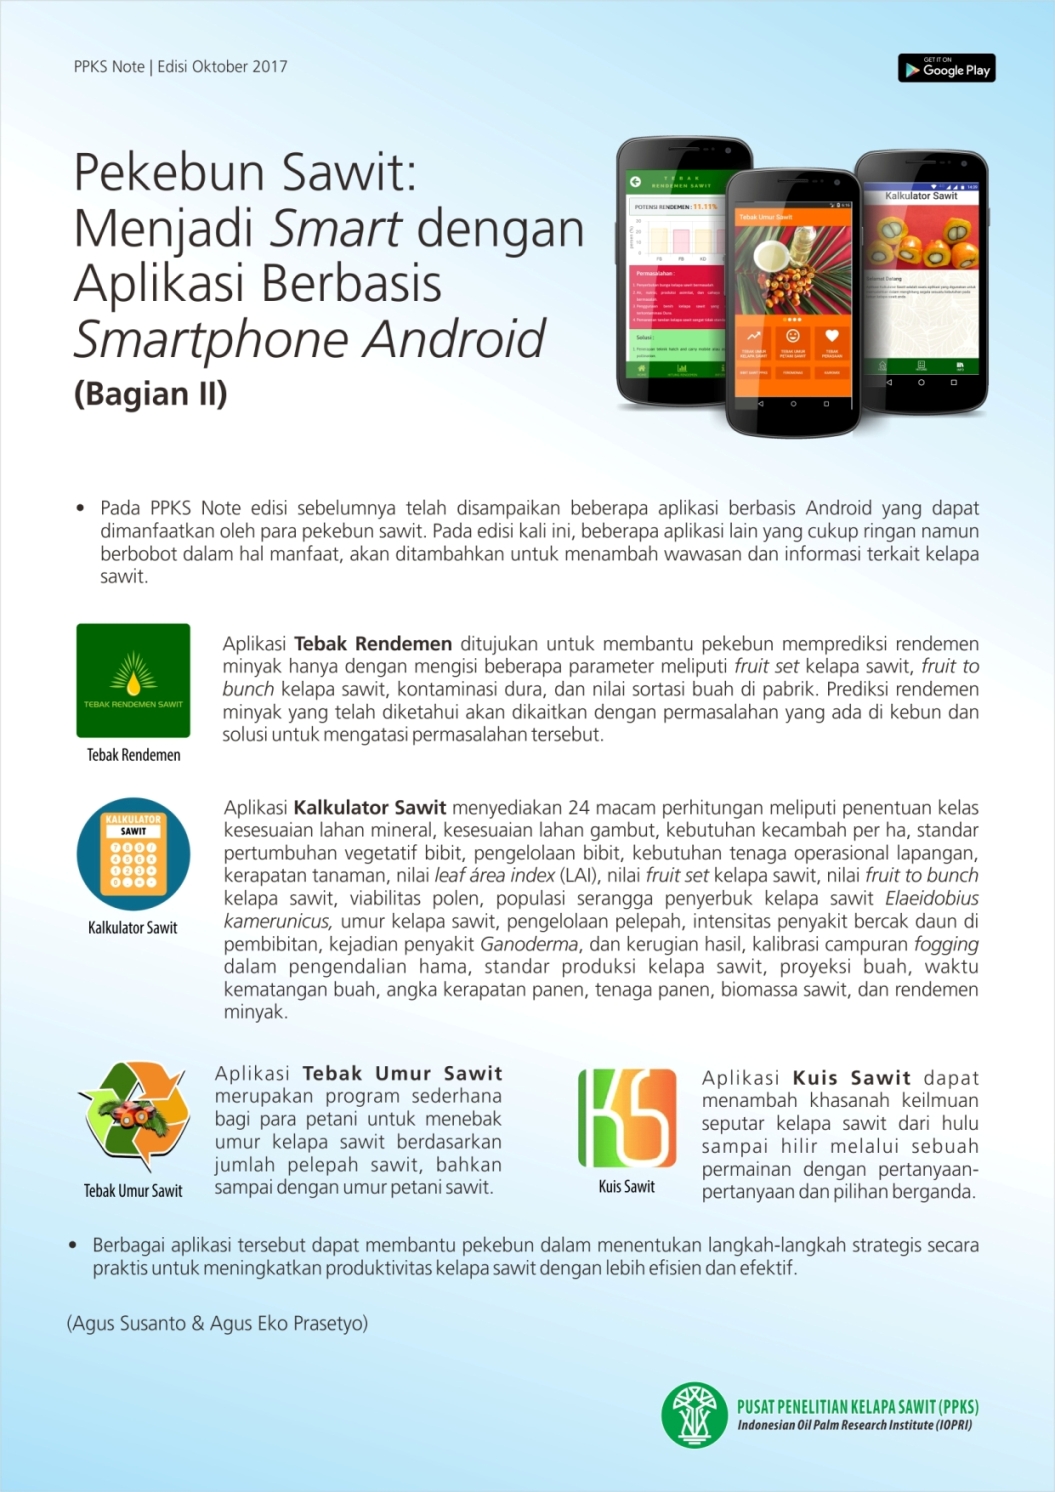 EDISI OKTOBER 2017 - Pekebun Sawit: Menjadi Smart dengan Aplikasi Berbasis Smartphone Android (Bag. II)